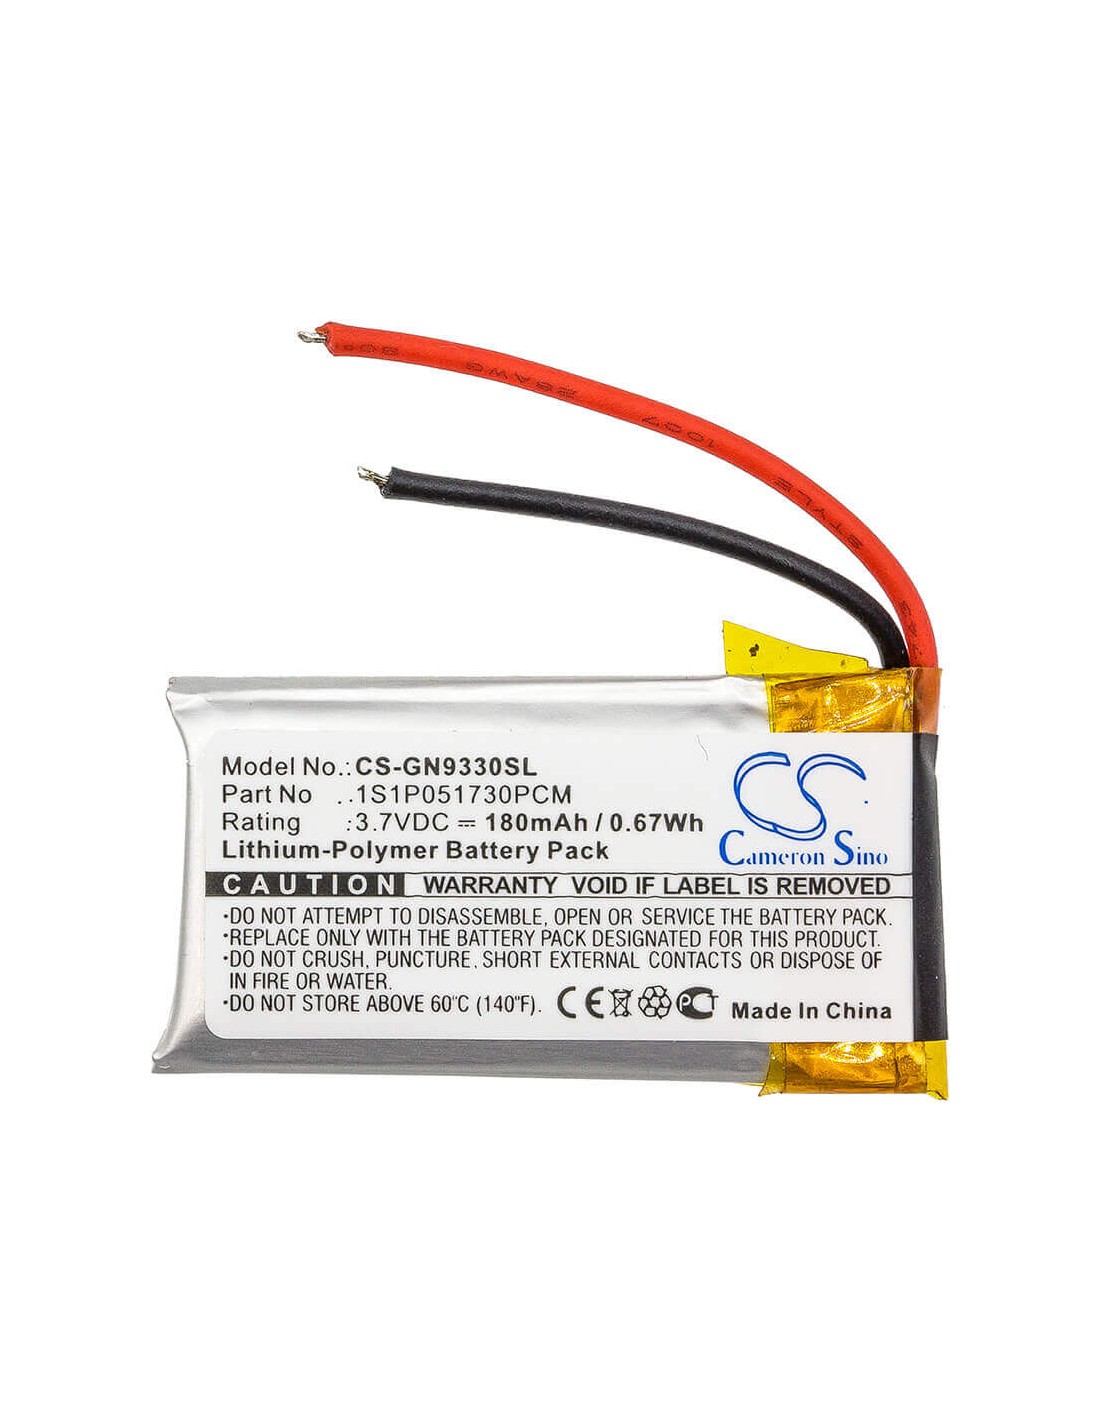 Battery for Gn, Gn9330, Netcom 9330, 3.7V, 180mAh - 0.67Wh